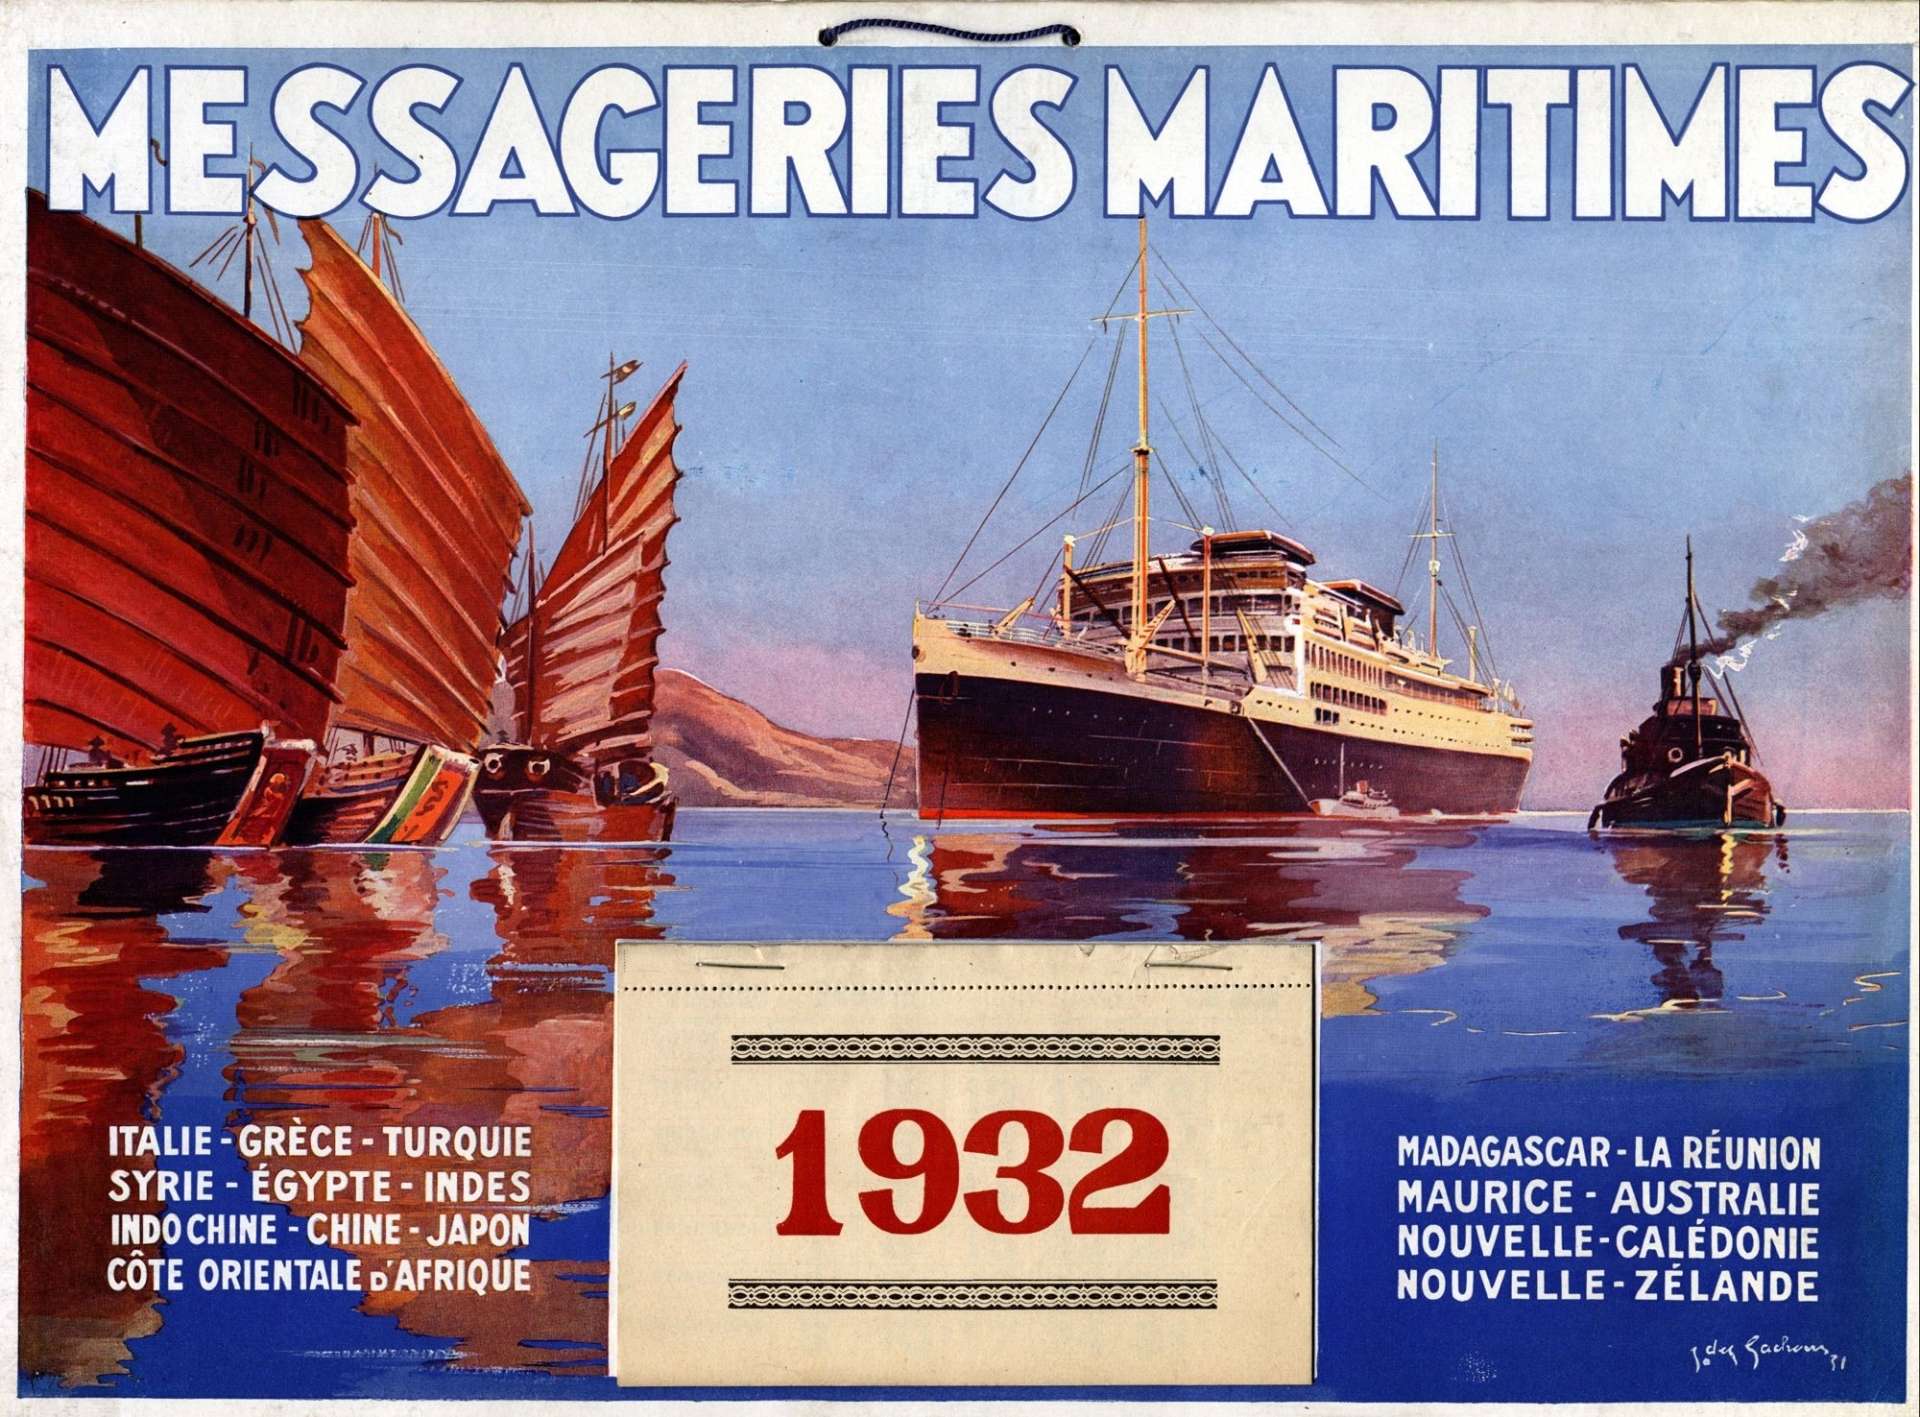 Calendrier des Messageries Maritimes pour l'année 1932.